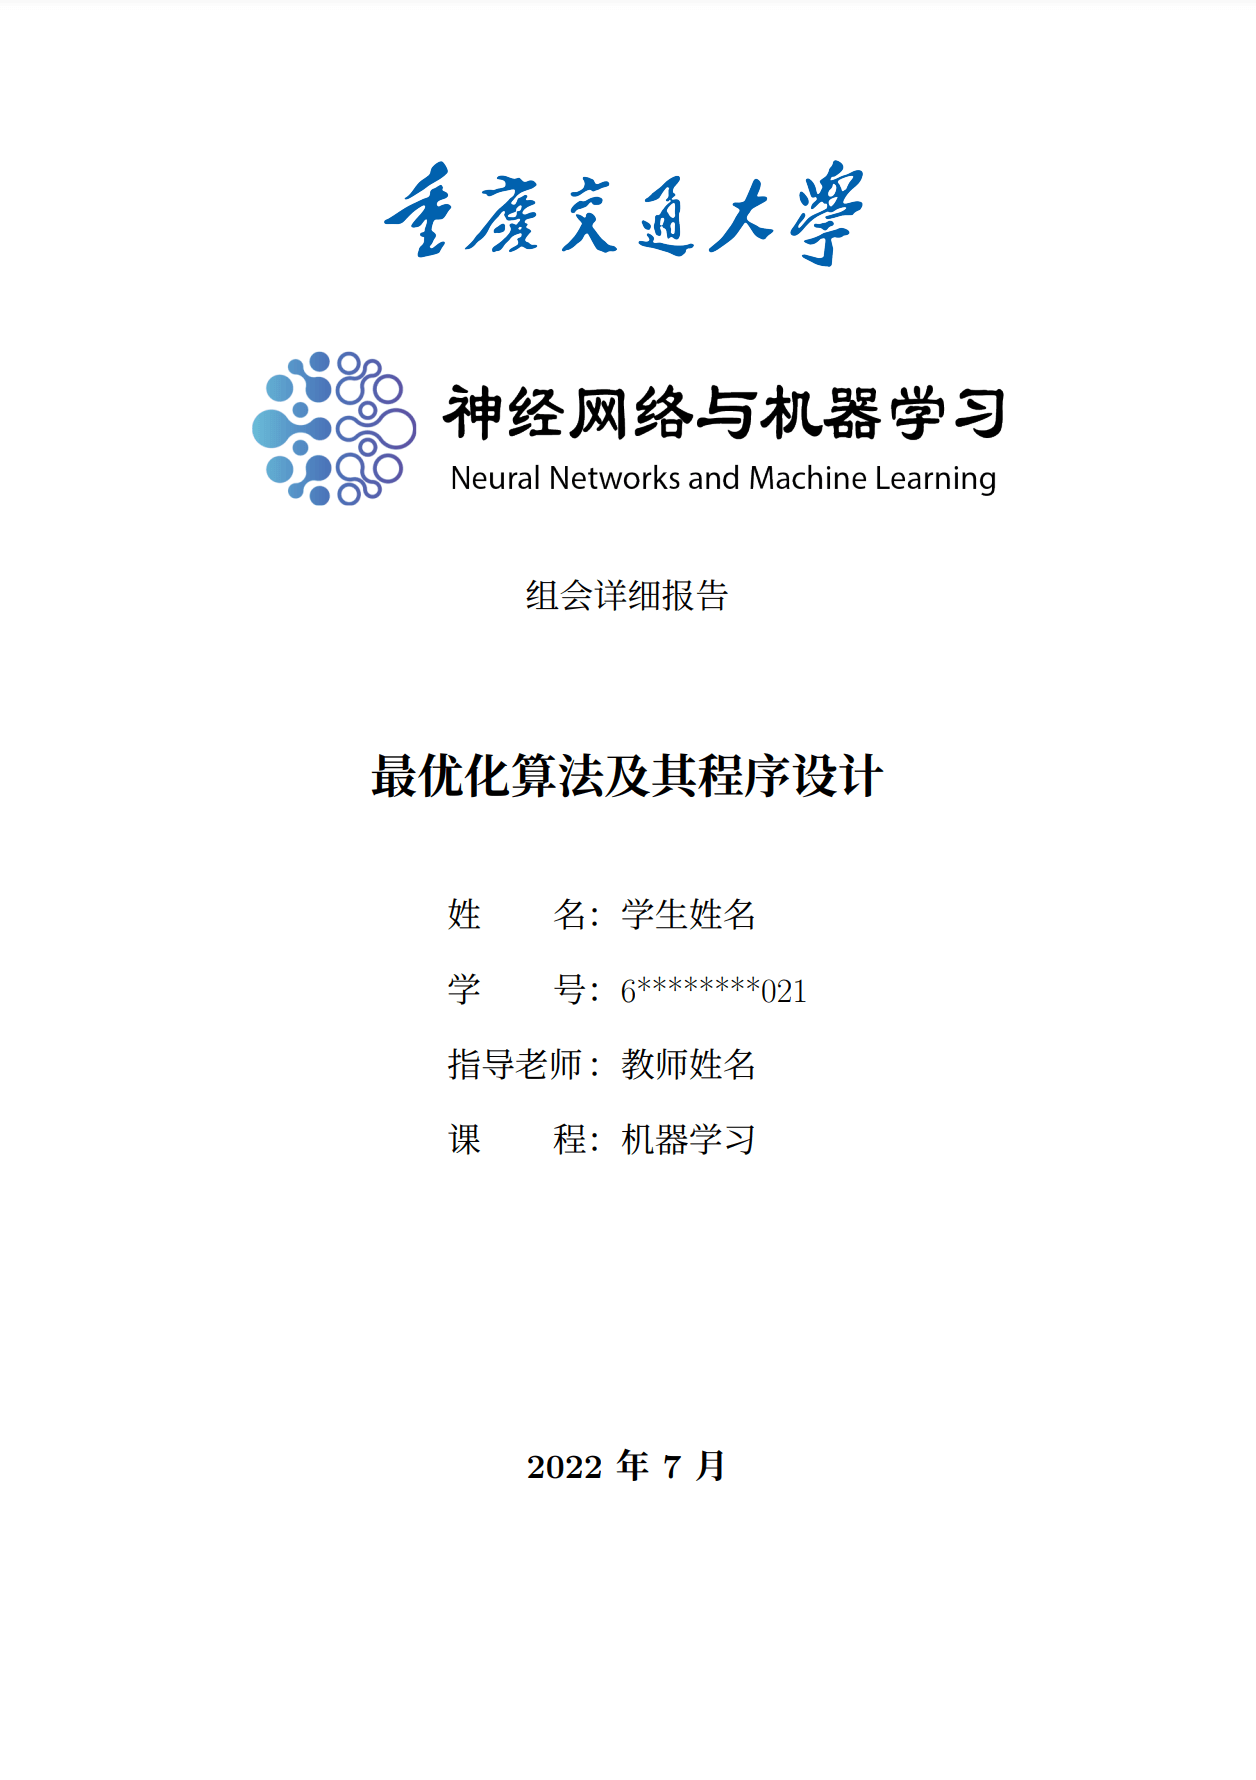 重庆交通大学神经网络和大数据科研团队组会详细报告LaTeX模板 (Chongqing Jiaotong University NNML Report Template) 